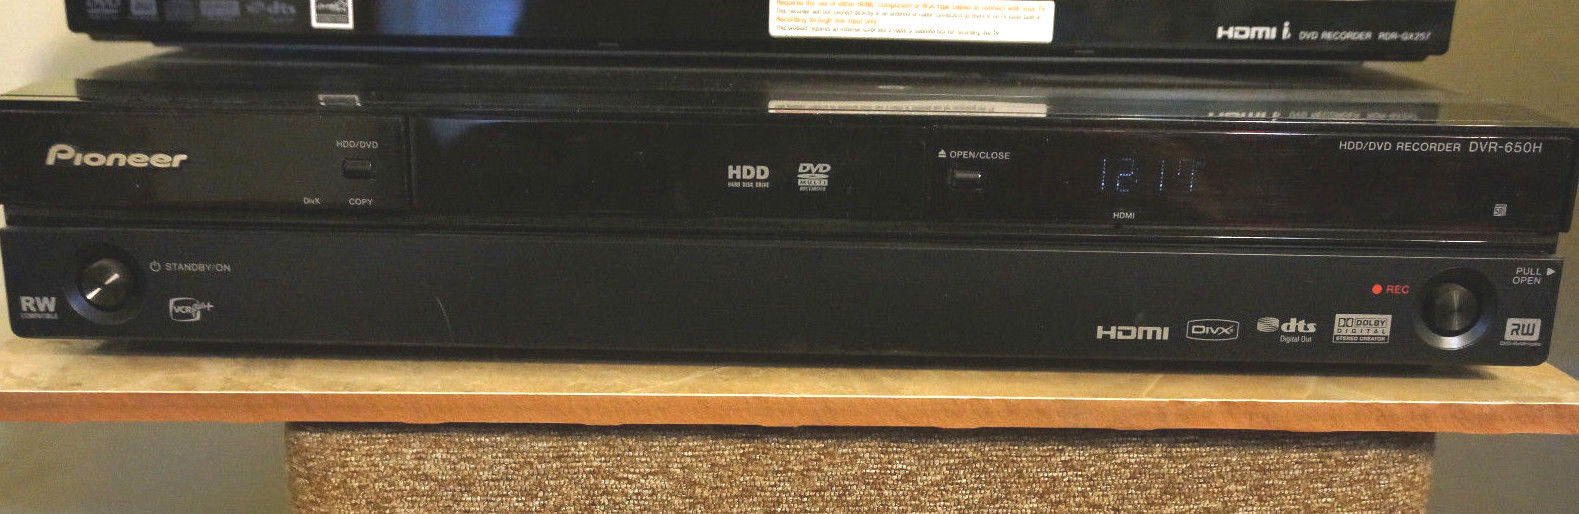 PIONEER DVR-650h-K HDMI 1080P UPSCALING DVD RECORDER 250GB HDD (550h; 450h)